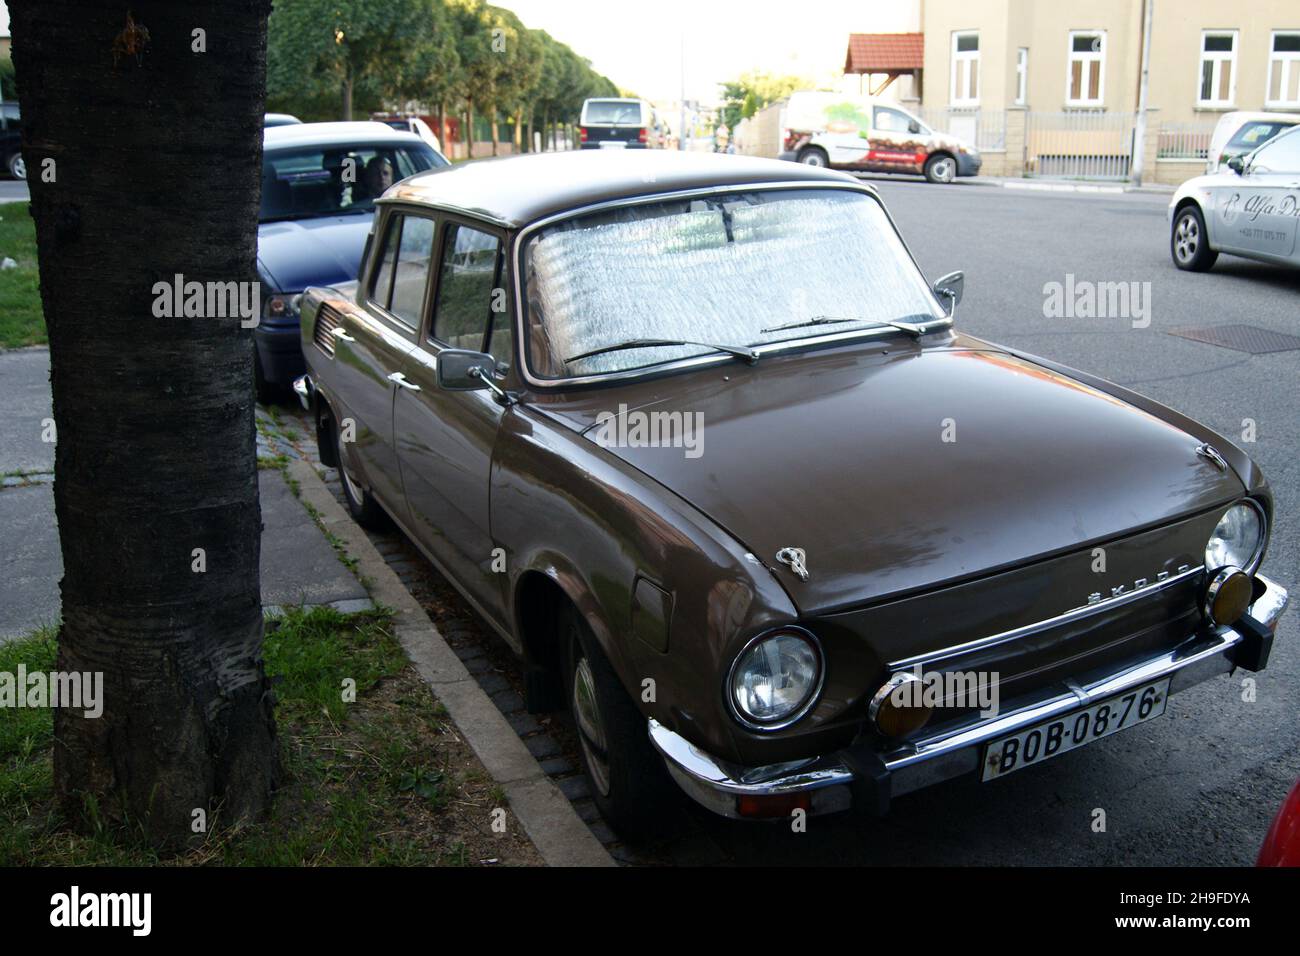 Socialist era 1970-s Czechoslovak-made Skoda 100-series car parked by sidewalk, Brno, Czechia Stock Photo